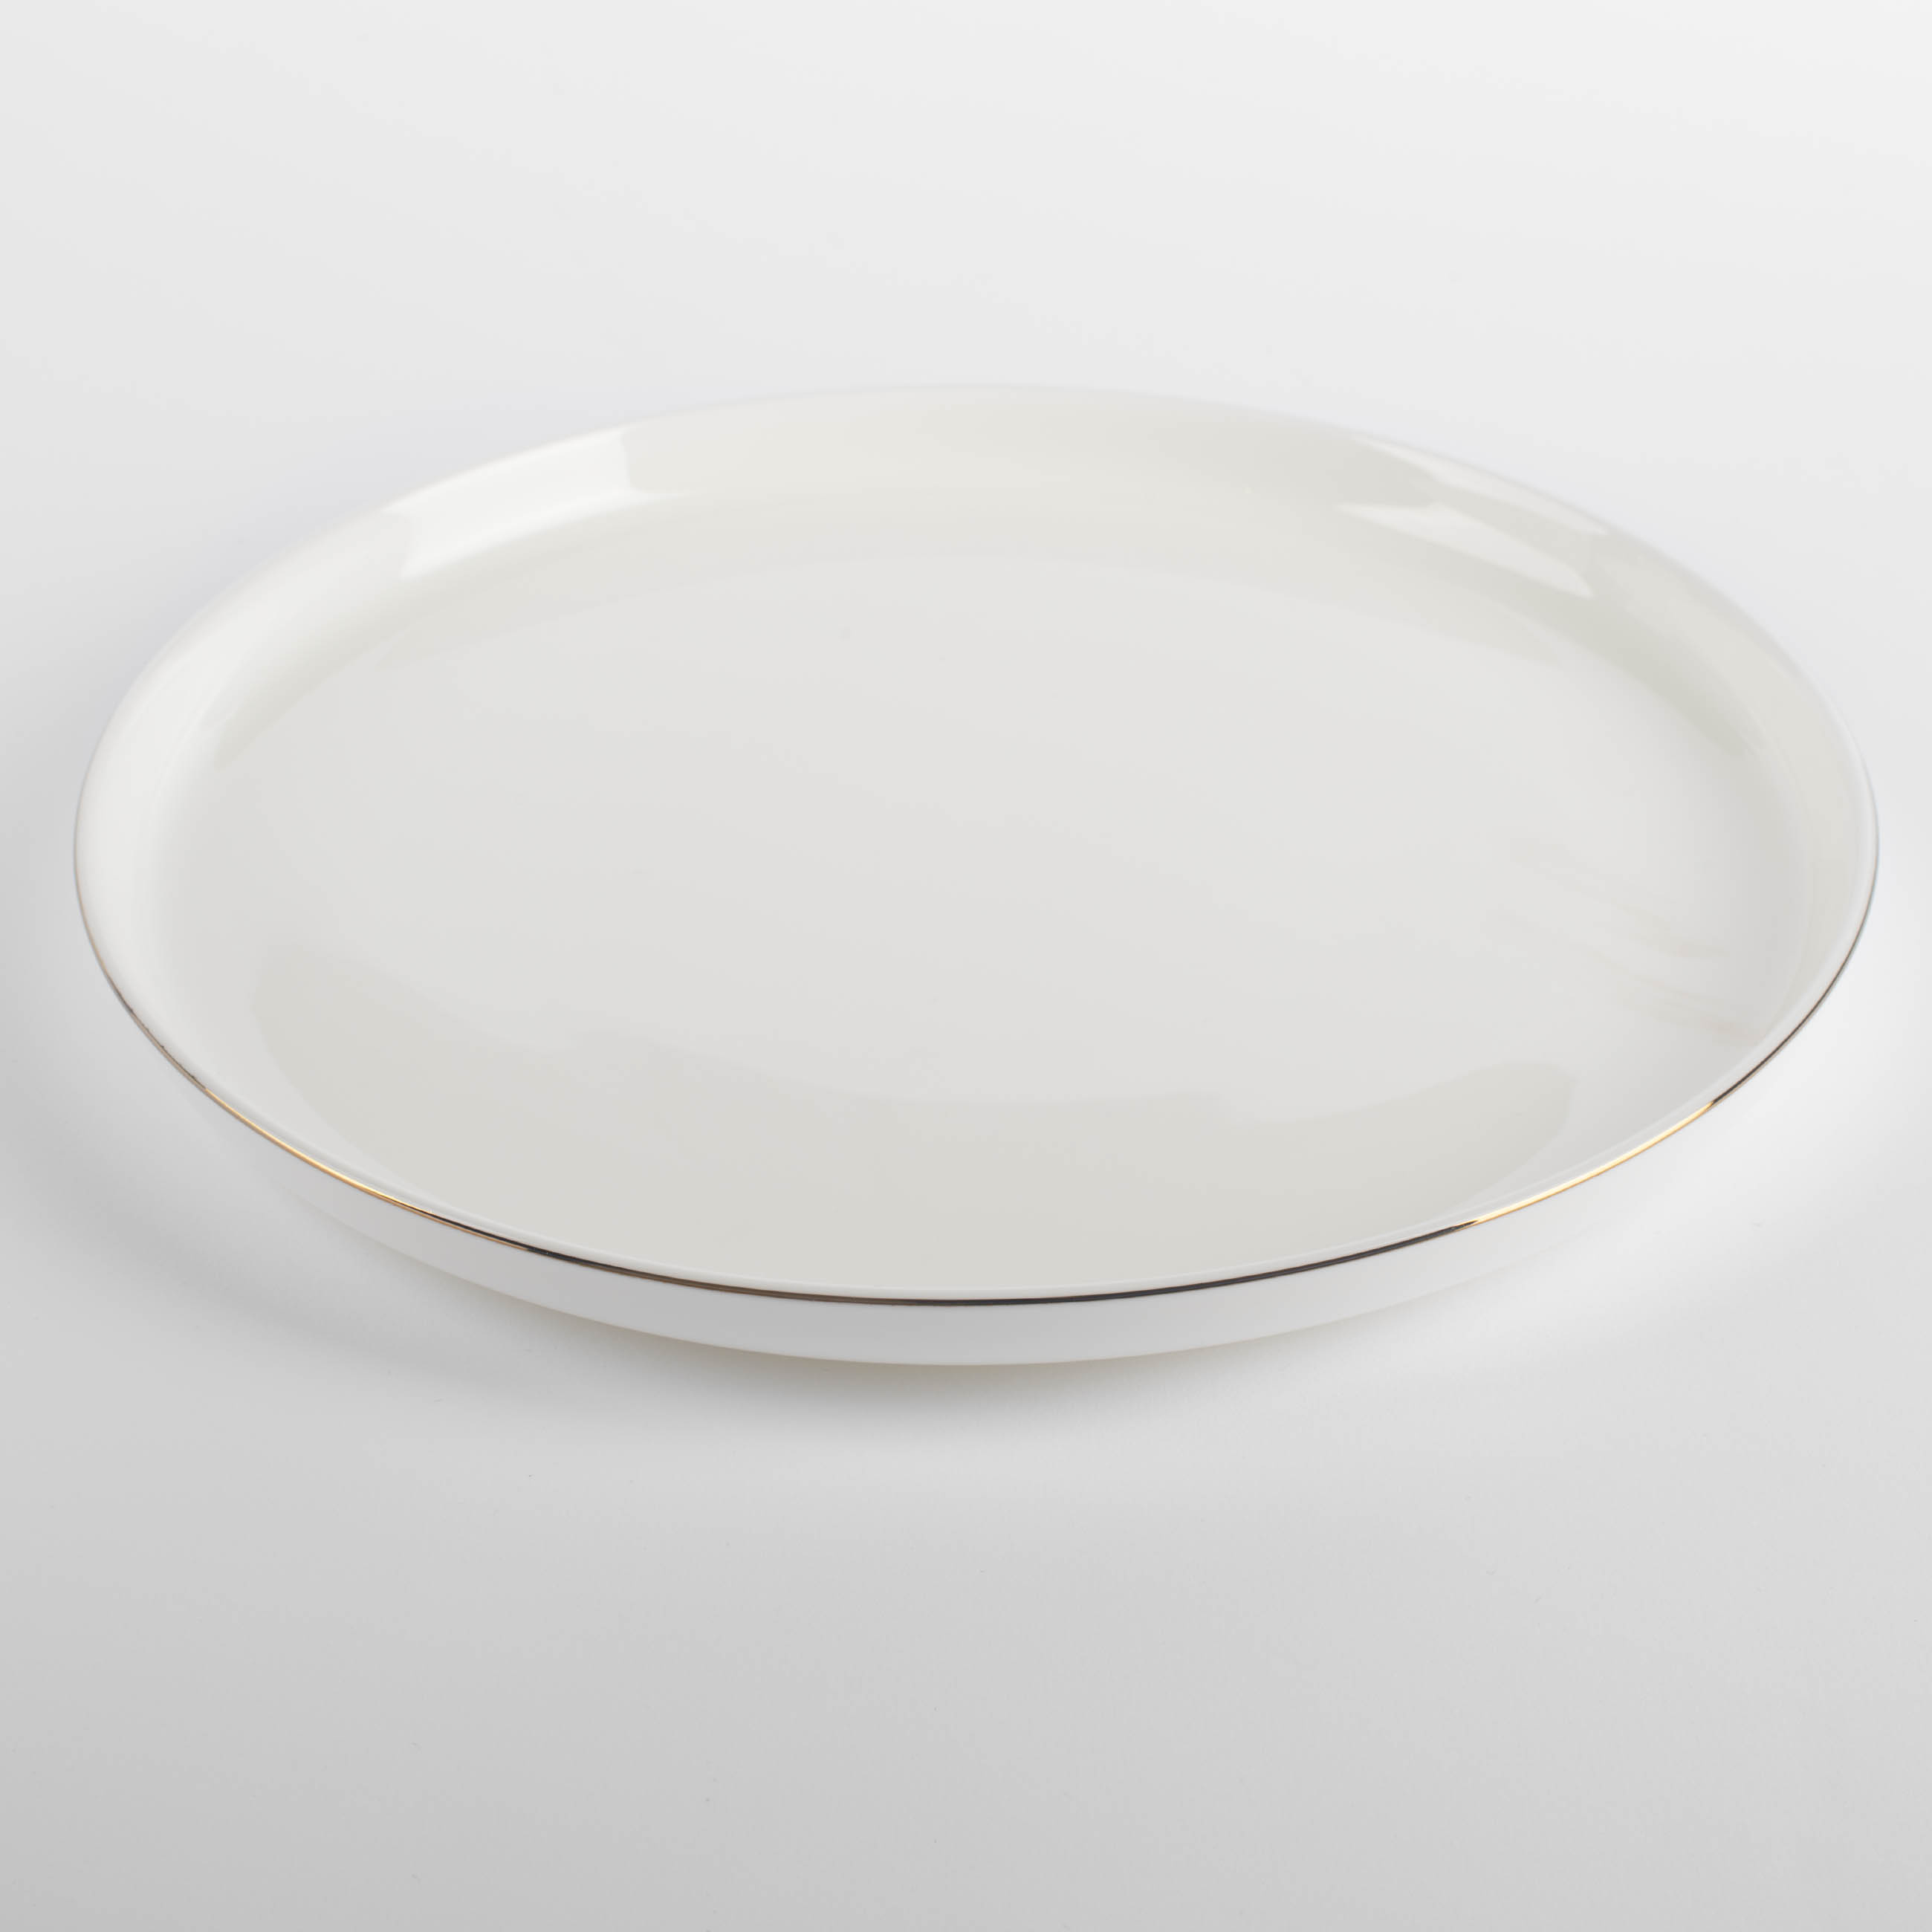 Тарелка обеденная, 26 см, фарфор F, белая, Ideal gold изображение № 2